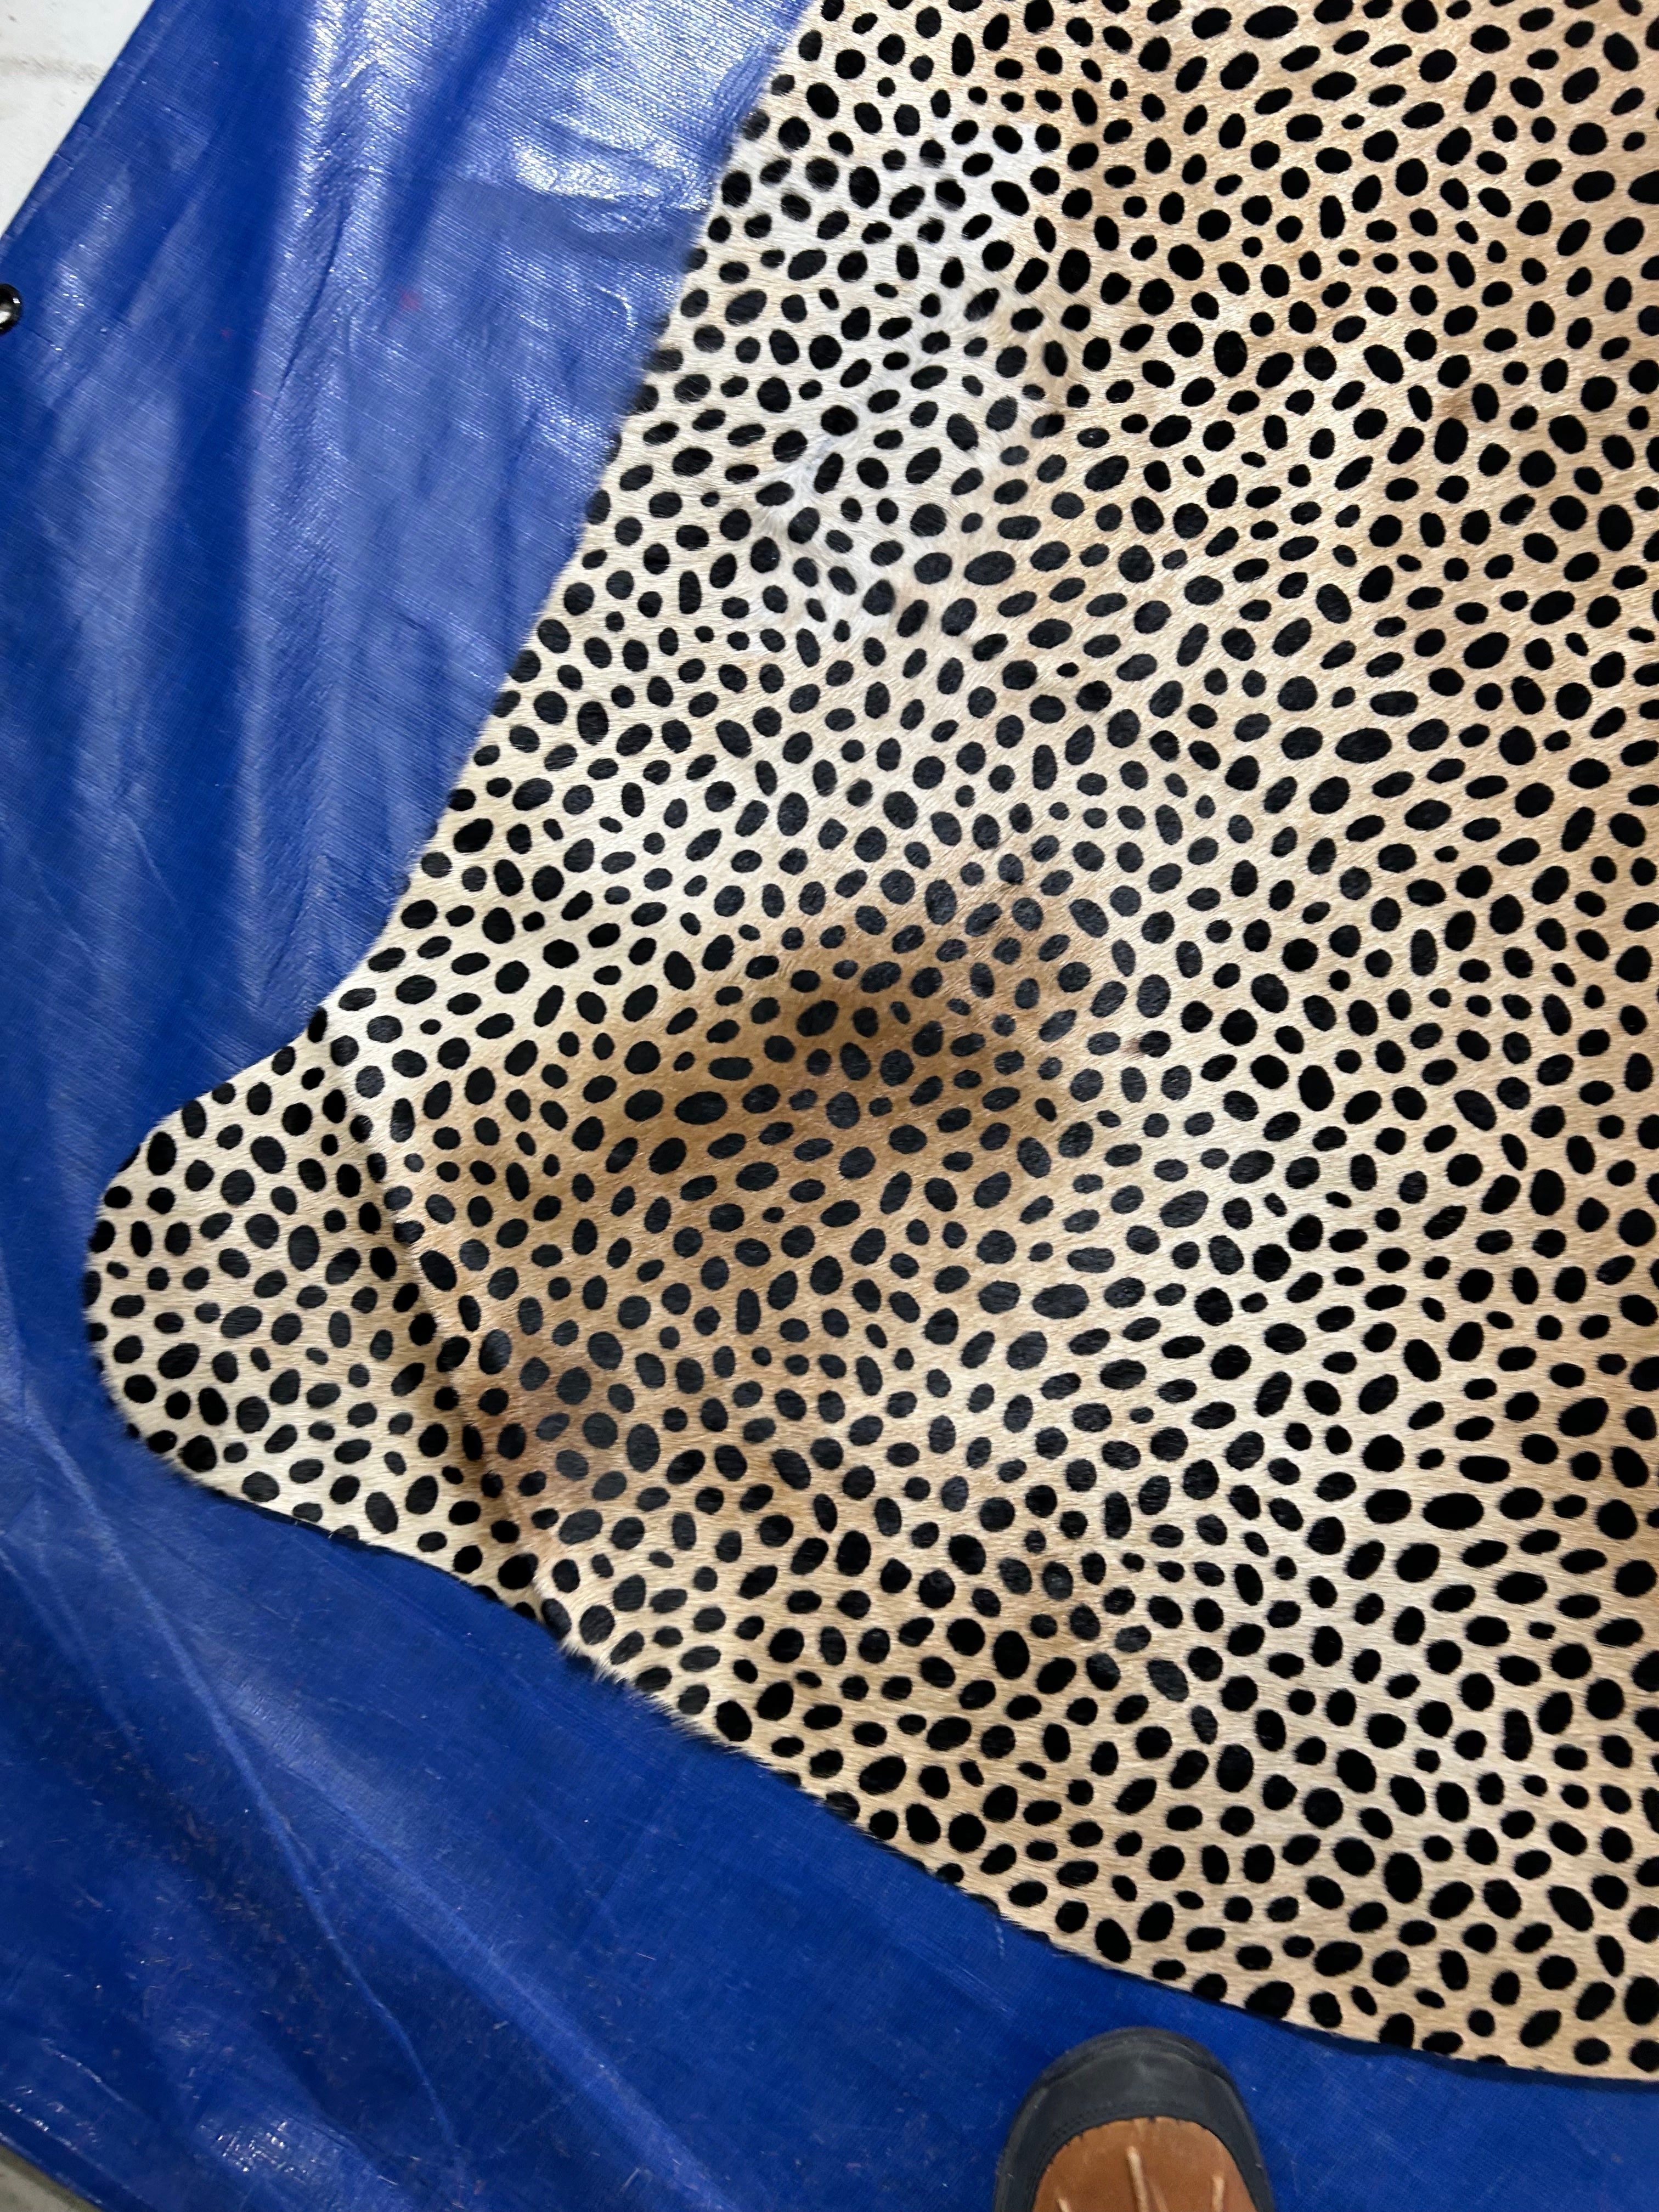 Cheetah Print Cowhide Rug (some darker spots) Size: 7x6.2 feet D-034